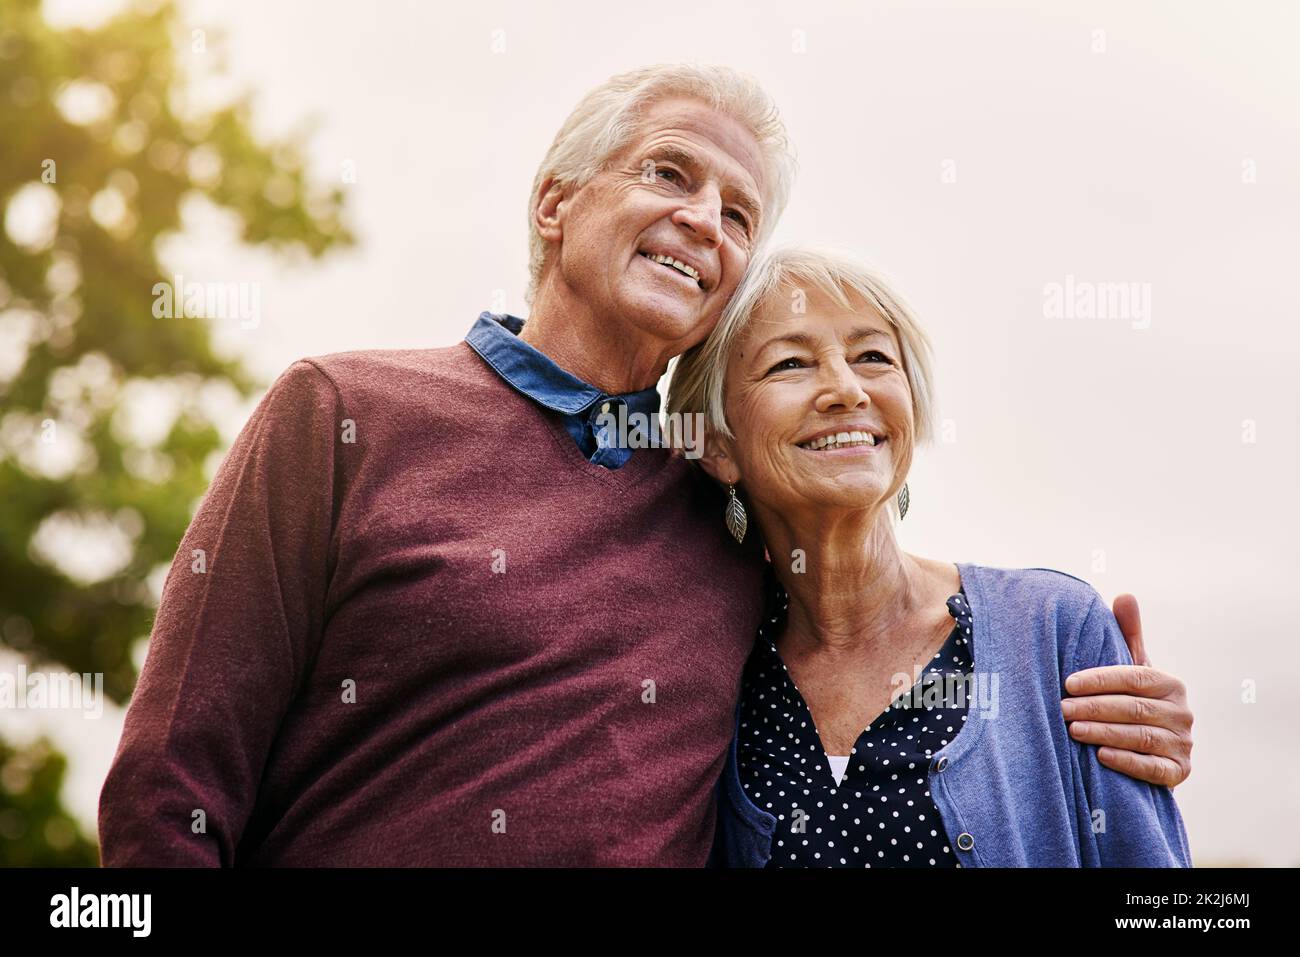 Objectifs du mariage.Photo d'un couple senior heureux dans le parc. Banque D'Images